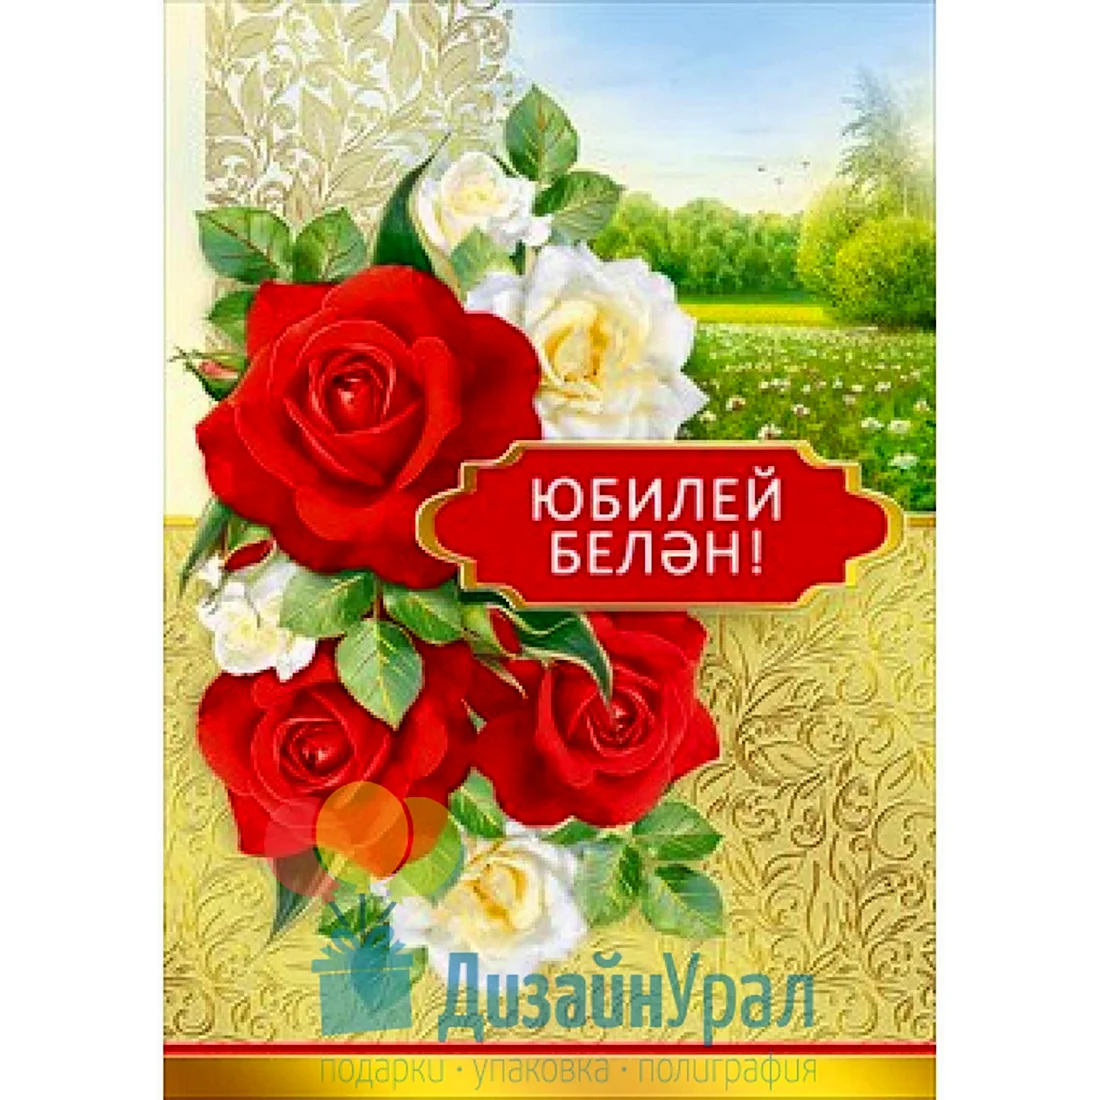 Ответы вторсырье-м.рф: Поздравления на татарском языке с юбилеем - помогите найти!!